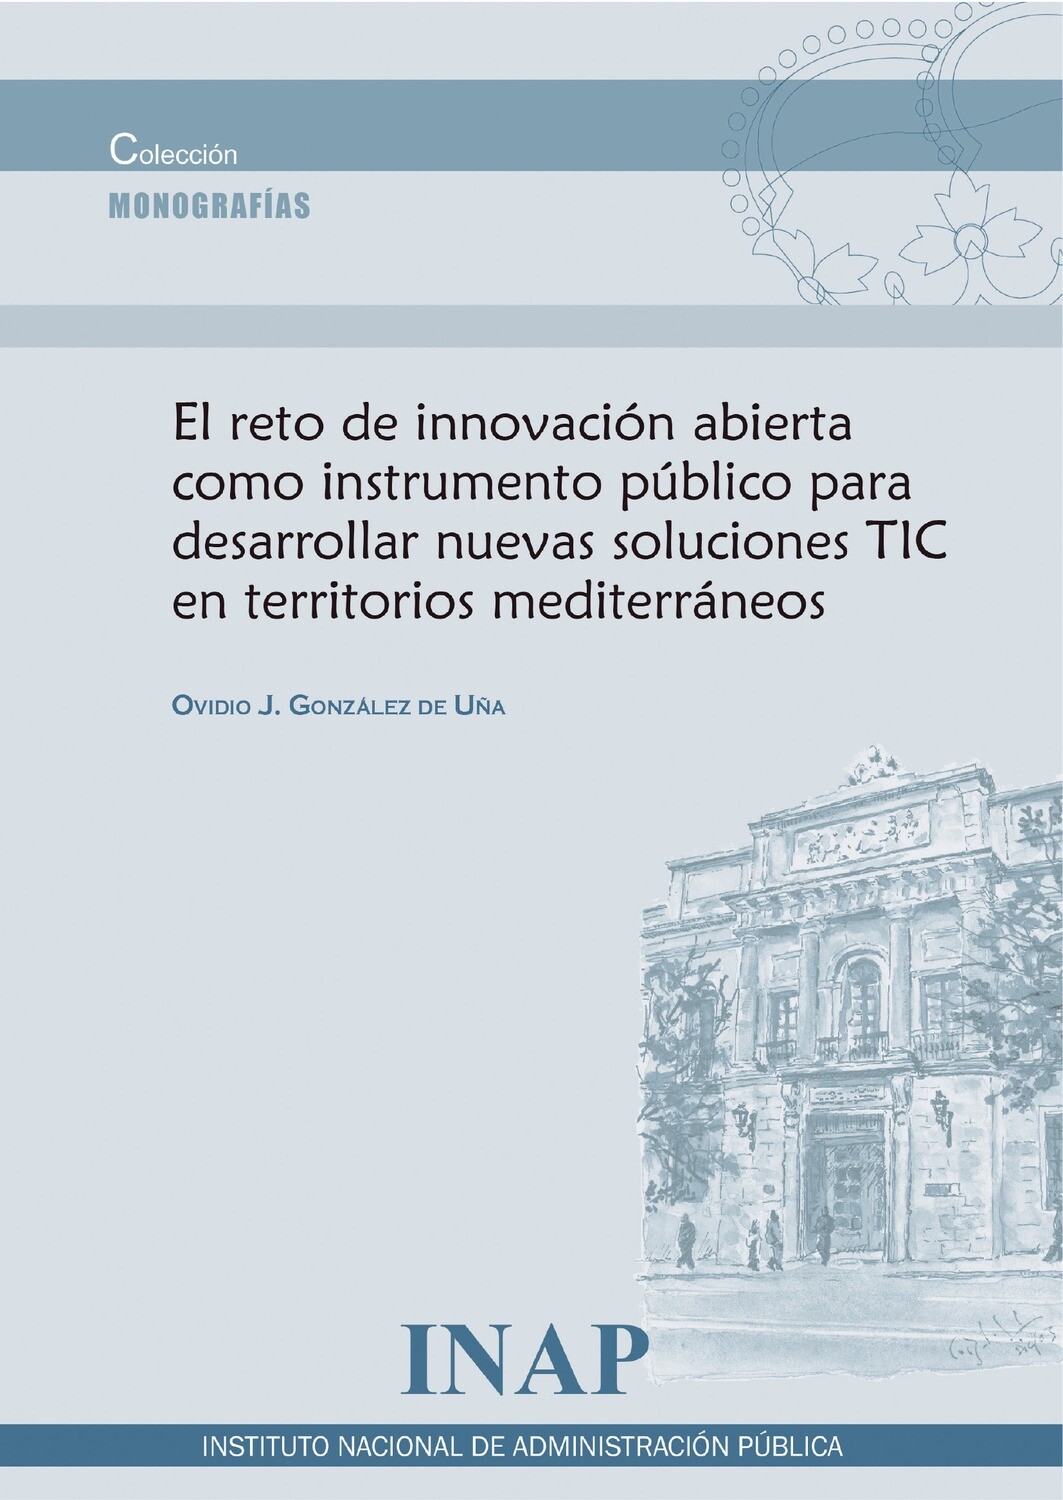 El reto de innovación abierta como instrumento público para desarrollar nuevas soluciones TIC en territorios mediterráneos